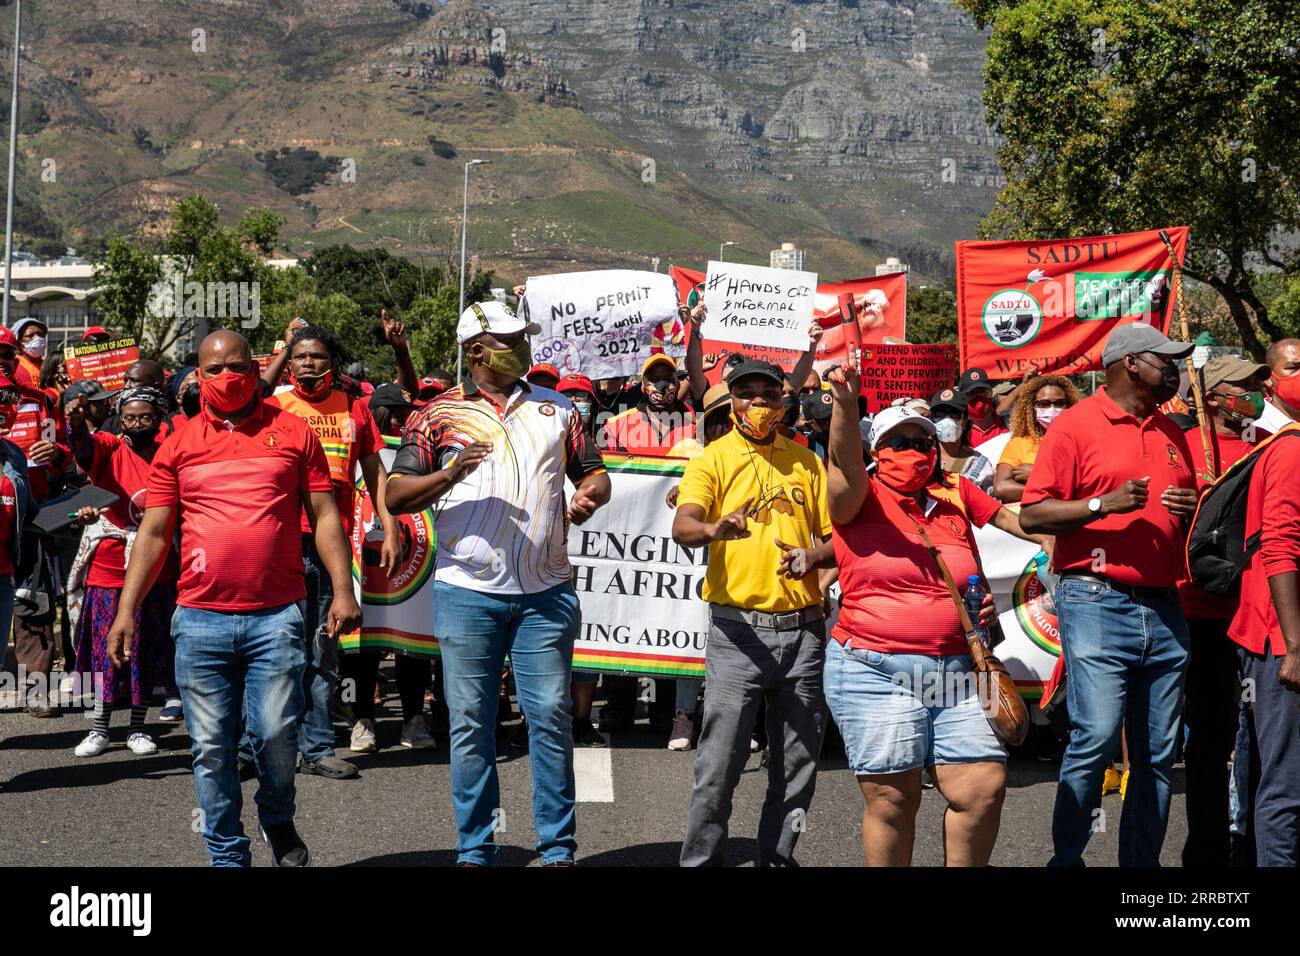 211007 -- KAPSTADT, 7. Oktober 2021 -- Mitglieder des Kongresses der Südafrikanischen Gewerkschaften COSATU marschieren am 7. Oktober 2021 in Kapstadt, Südafrika. Ein großer südafrikanischer Gewerkschaftsbund, der Kongress der südafrikanischen Gewerkschaften COSATU, führte am Donnerstag einen landesweiten Streik durch und marschierte, um sowohl die Regierung als auch den privaten Sektor dazu zu bewegen, in den Fragen der Wirtschaft und derjenigen, die Arbeiter und Südafrikaner im Allgemeinen betreffen, tätig zu werden. SÜDAFRIKA-KAPSTADT-COSATU-STREIK LYUXTIANRAN PUBLICATIONXNOTXINXCHN Stockfoto